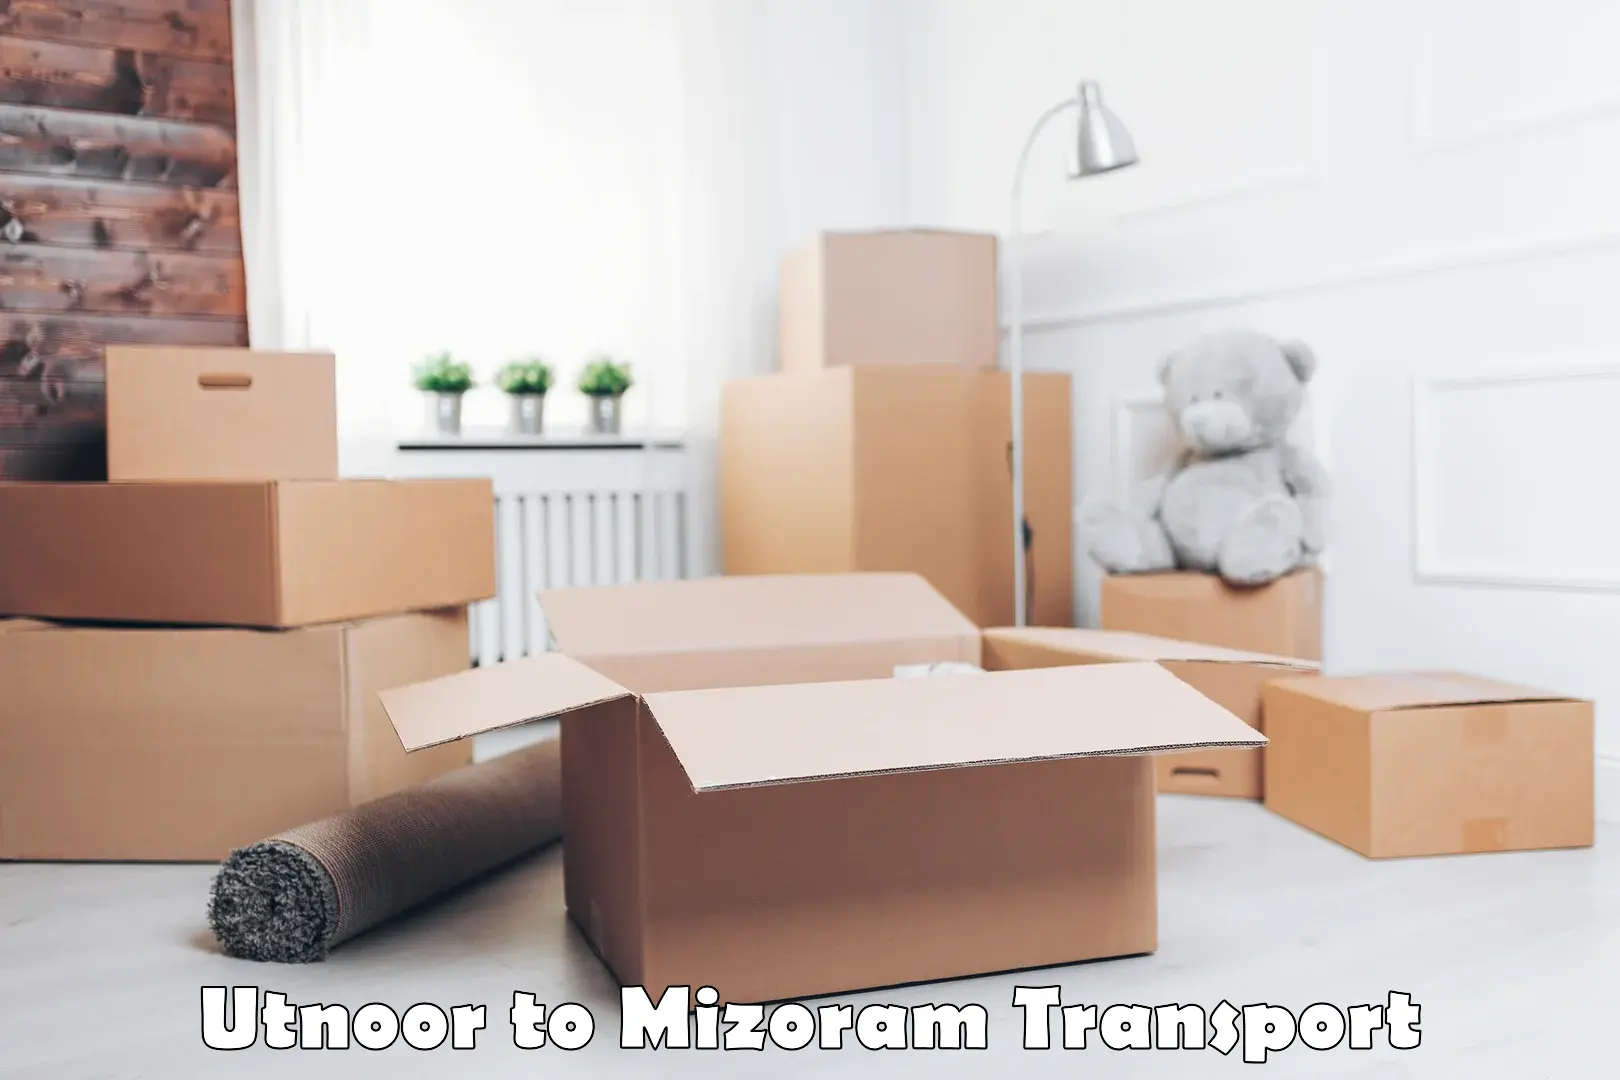 Road transport online services Utnoor to Mizoram